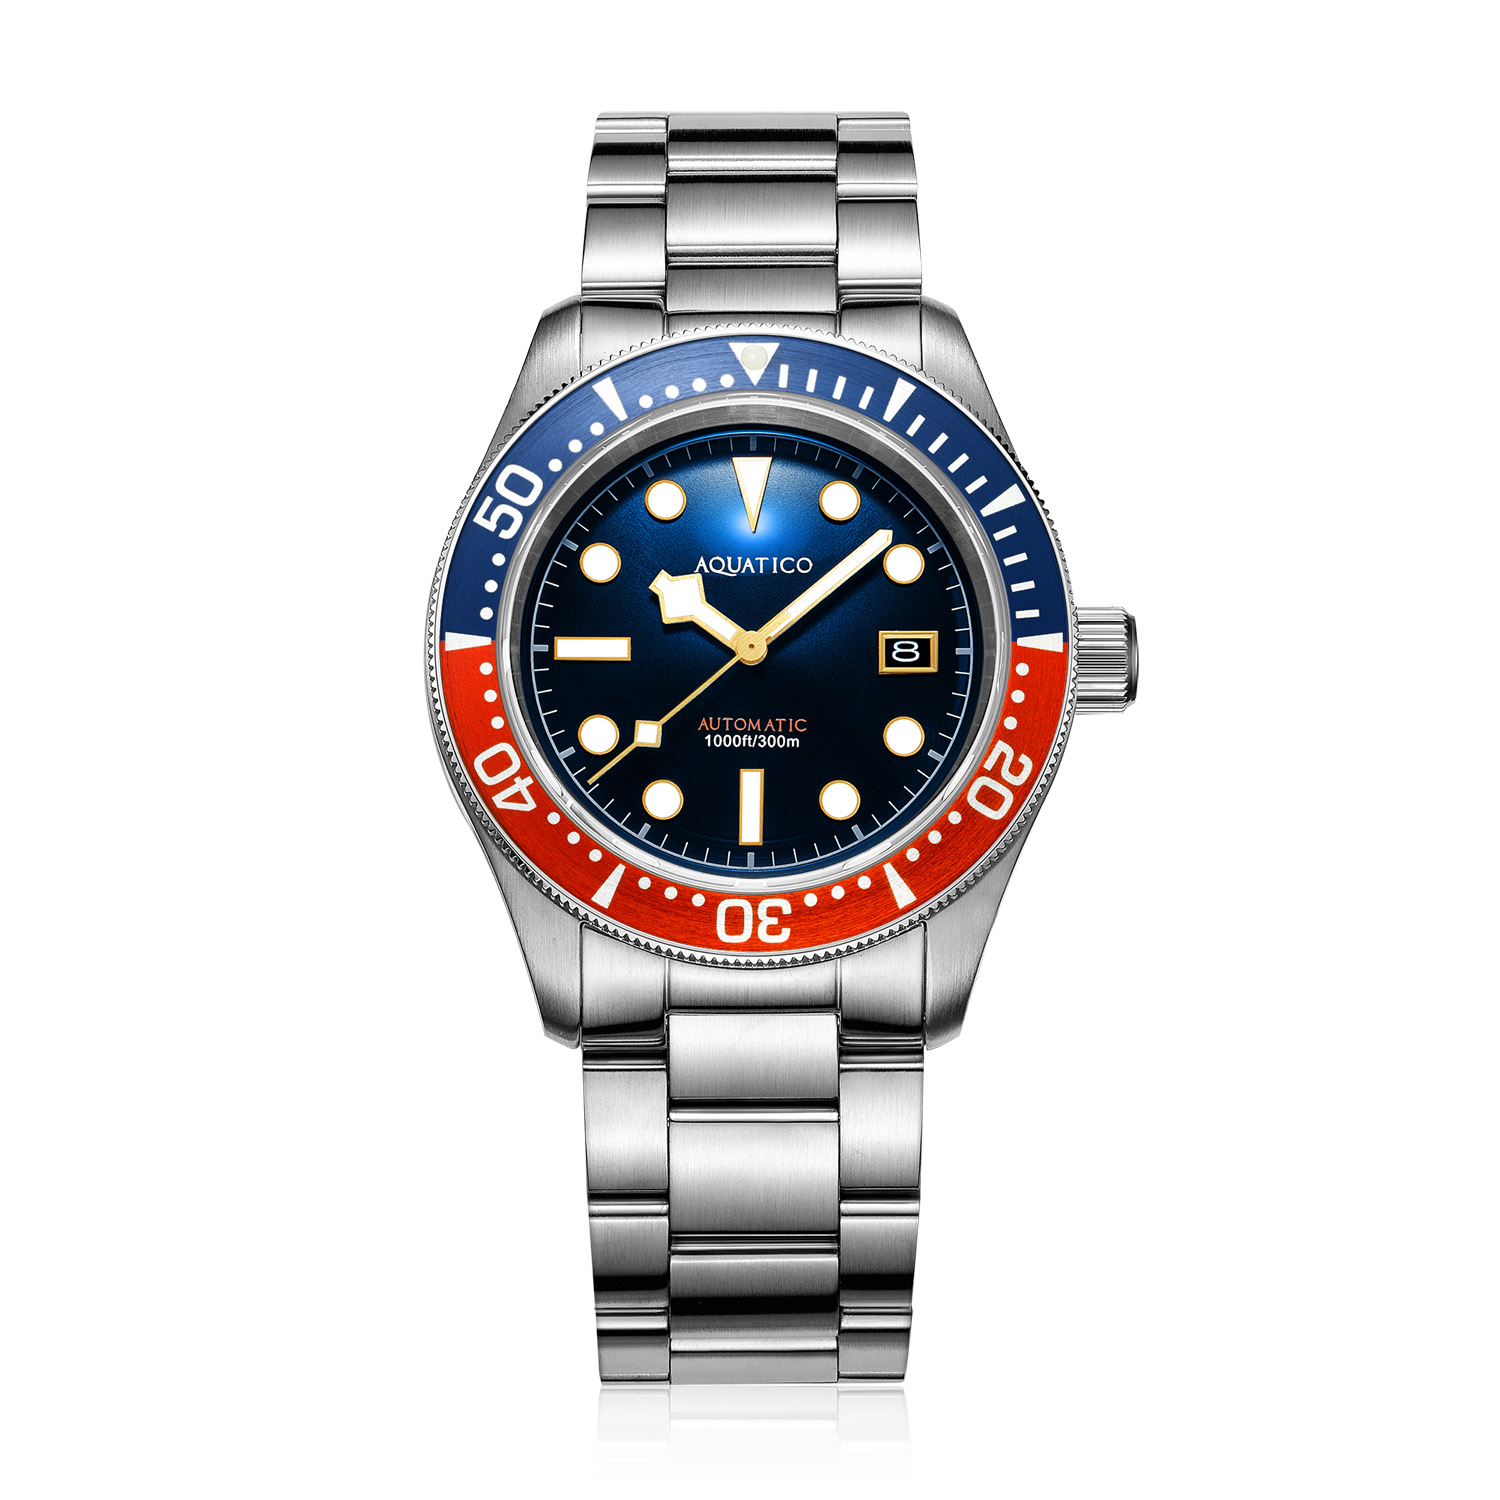 Aquatico Sea Star V2 42mm Automatic Men's Diver Watch Blue Dial/Pepsi Bezel/Snowflake Hands